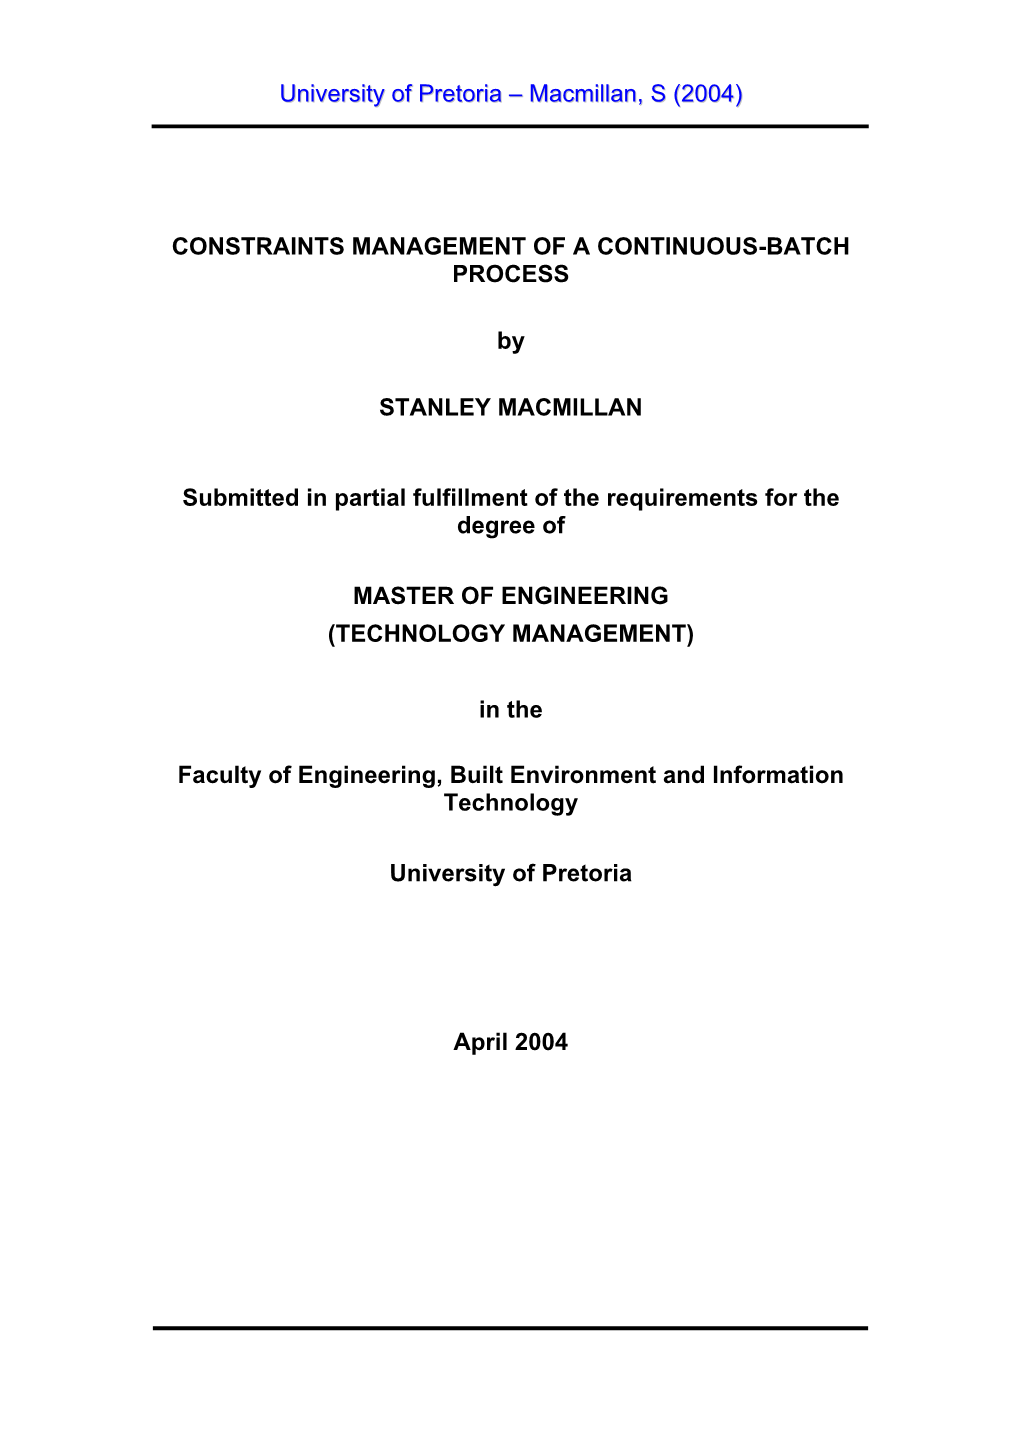 Constraints Management of a Continuous-Batch Process